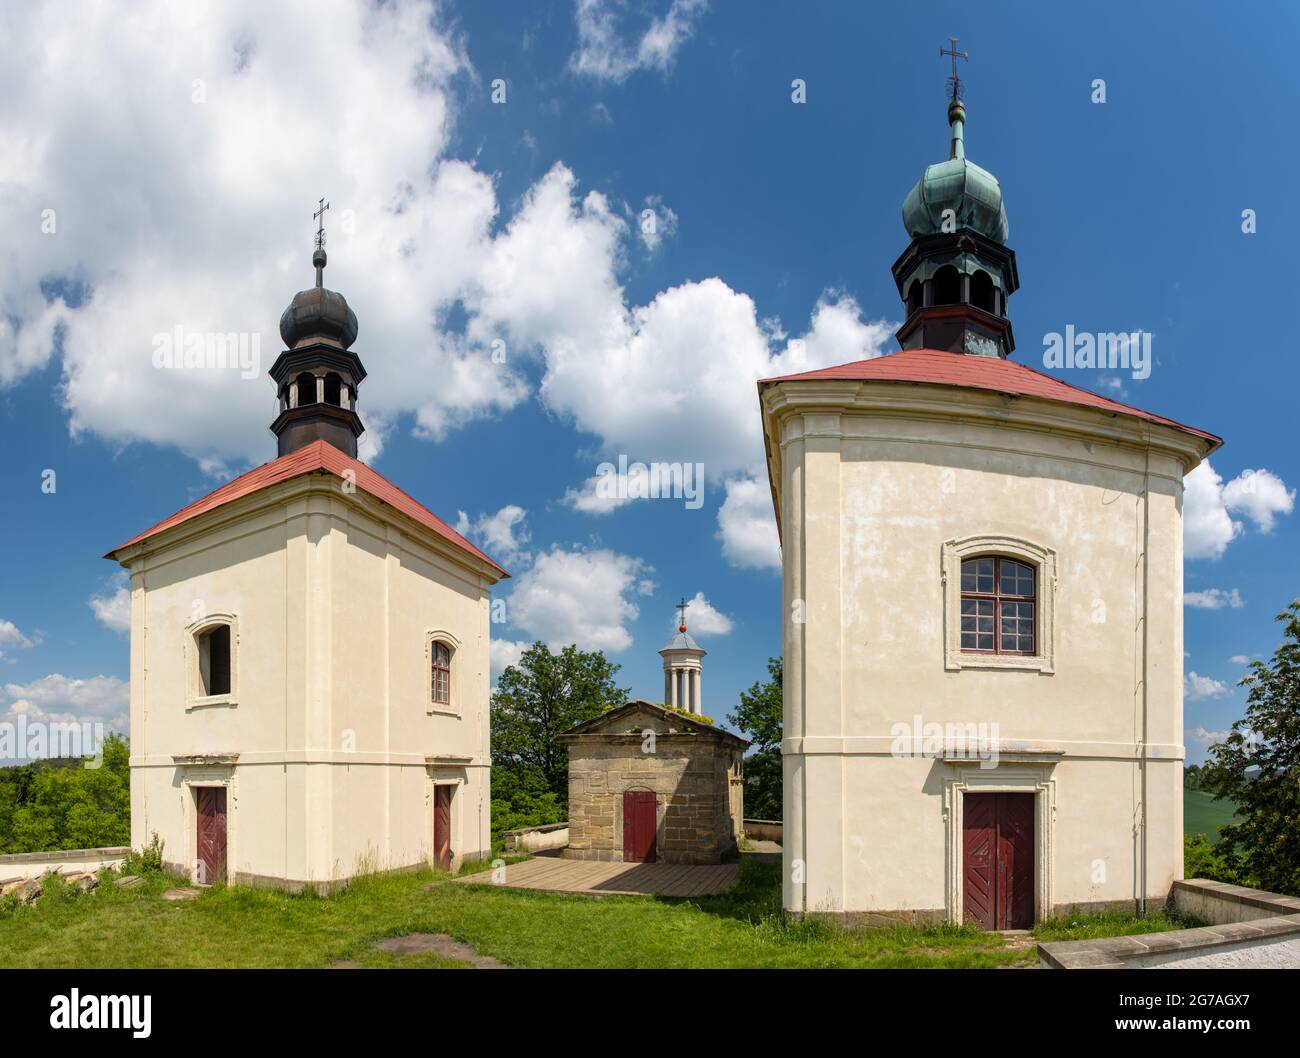 Historische Fronleichnamskapelle auf einem Hügel, Nordböhmen, Tschechien Stockfoto